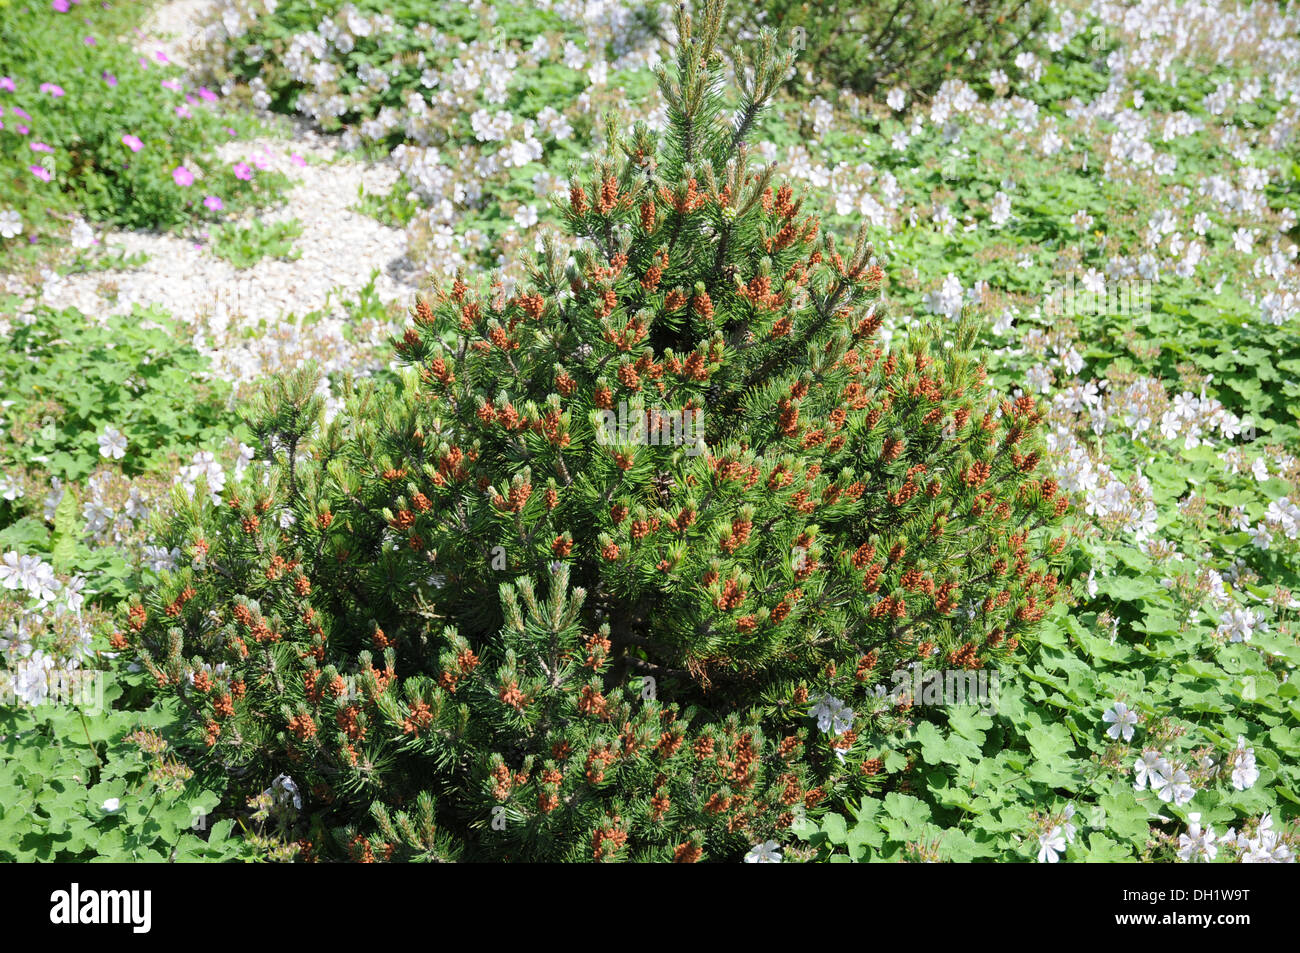 Dwarf Mountain Pine Stock Photo